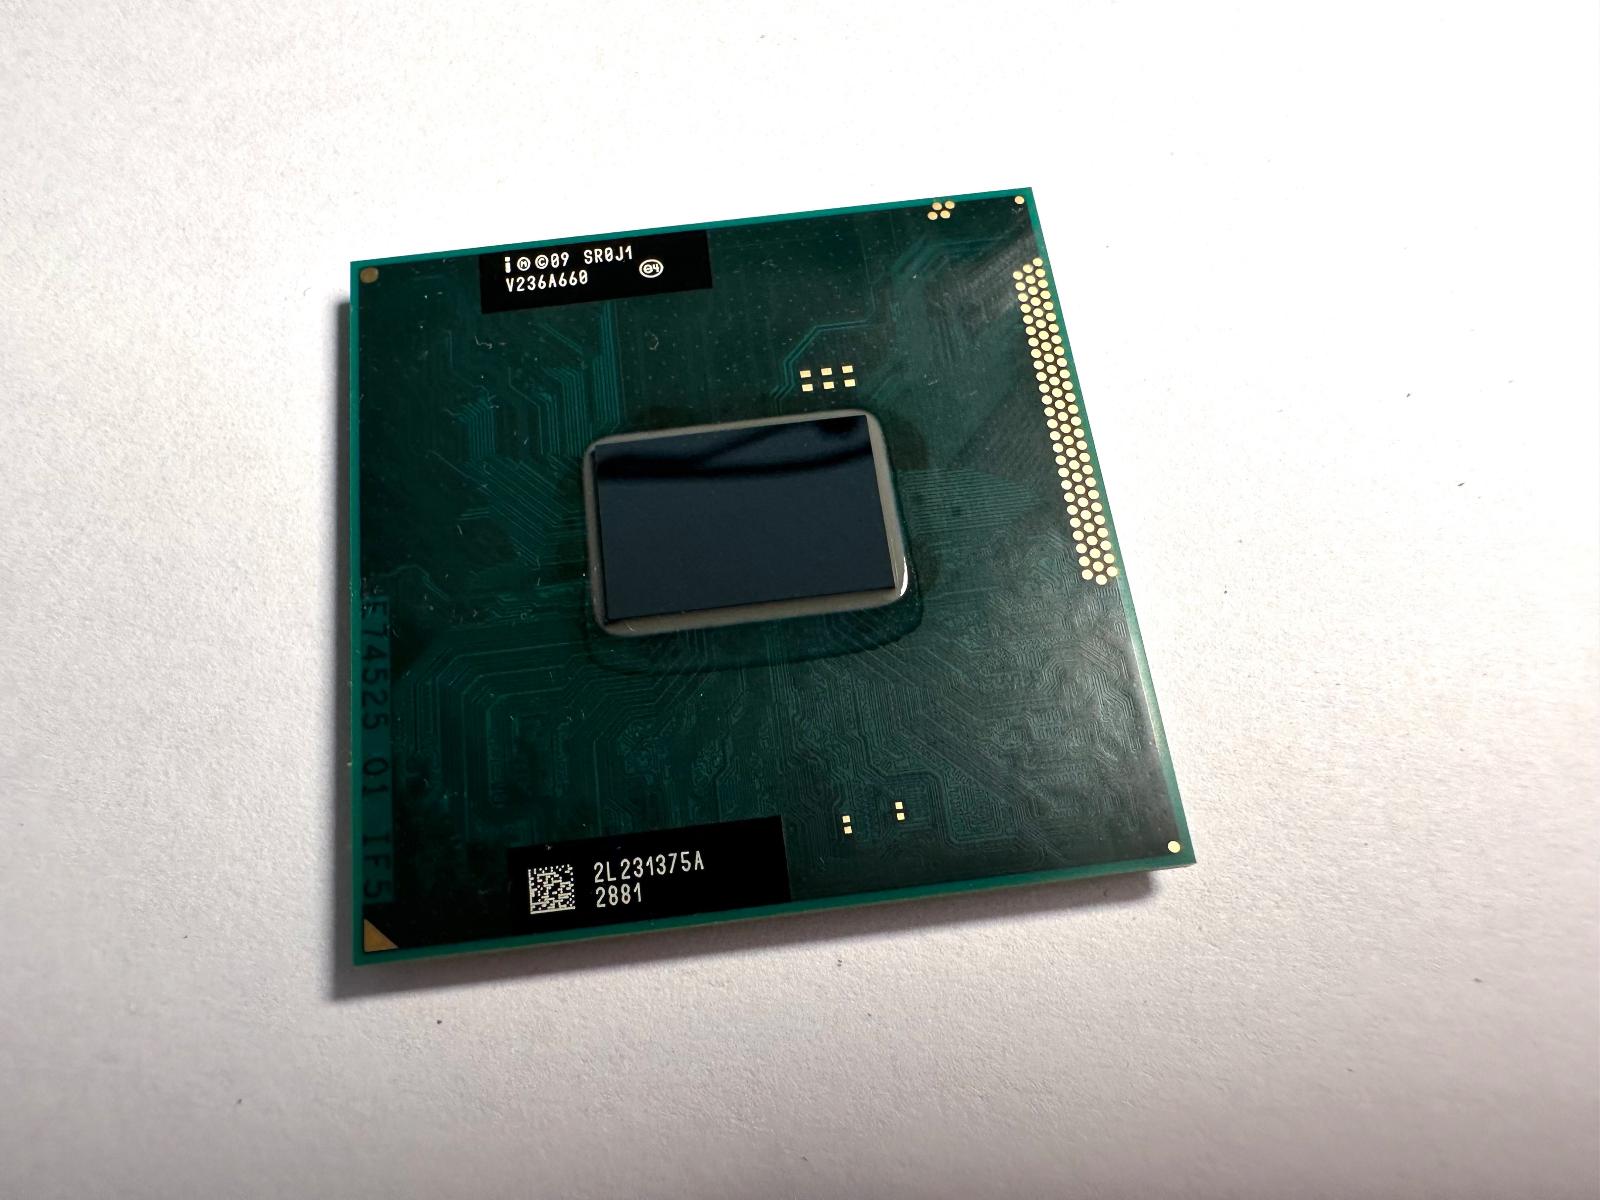 Procesor pre Sony Vaio SVE151G13M Intel SR0J1 - Notebooky, príslušenstvo